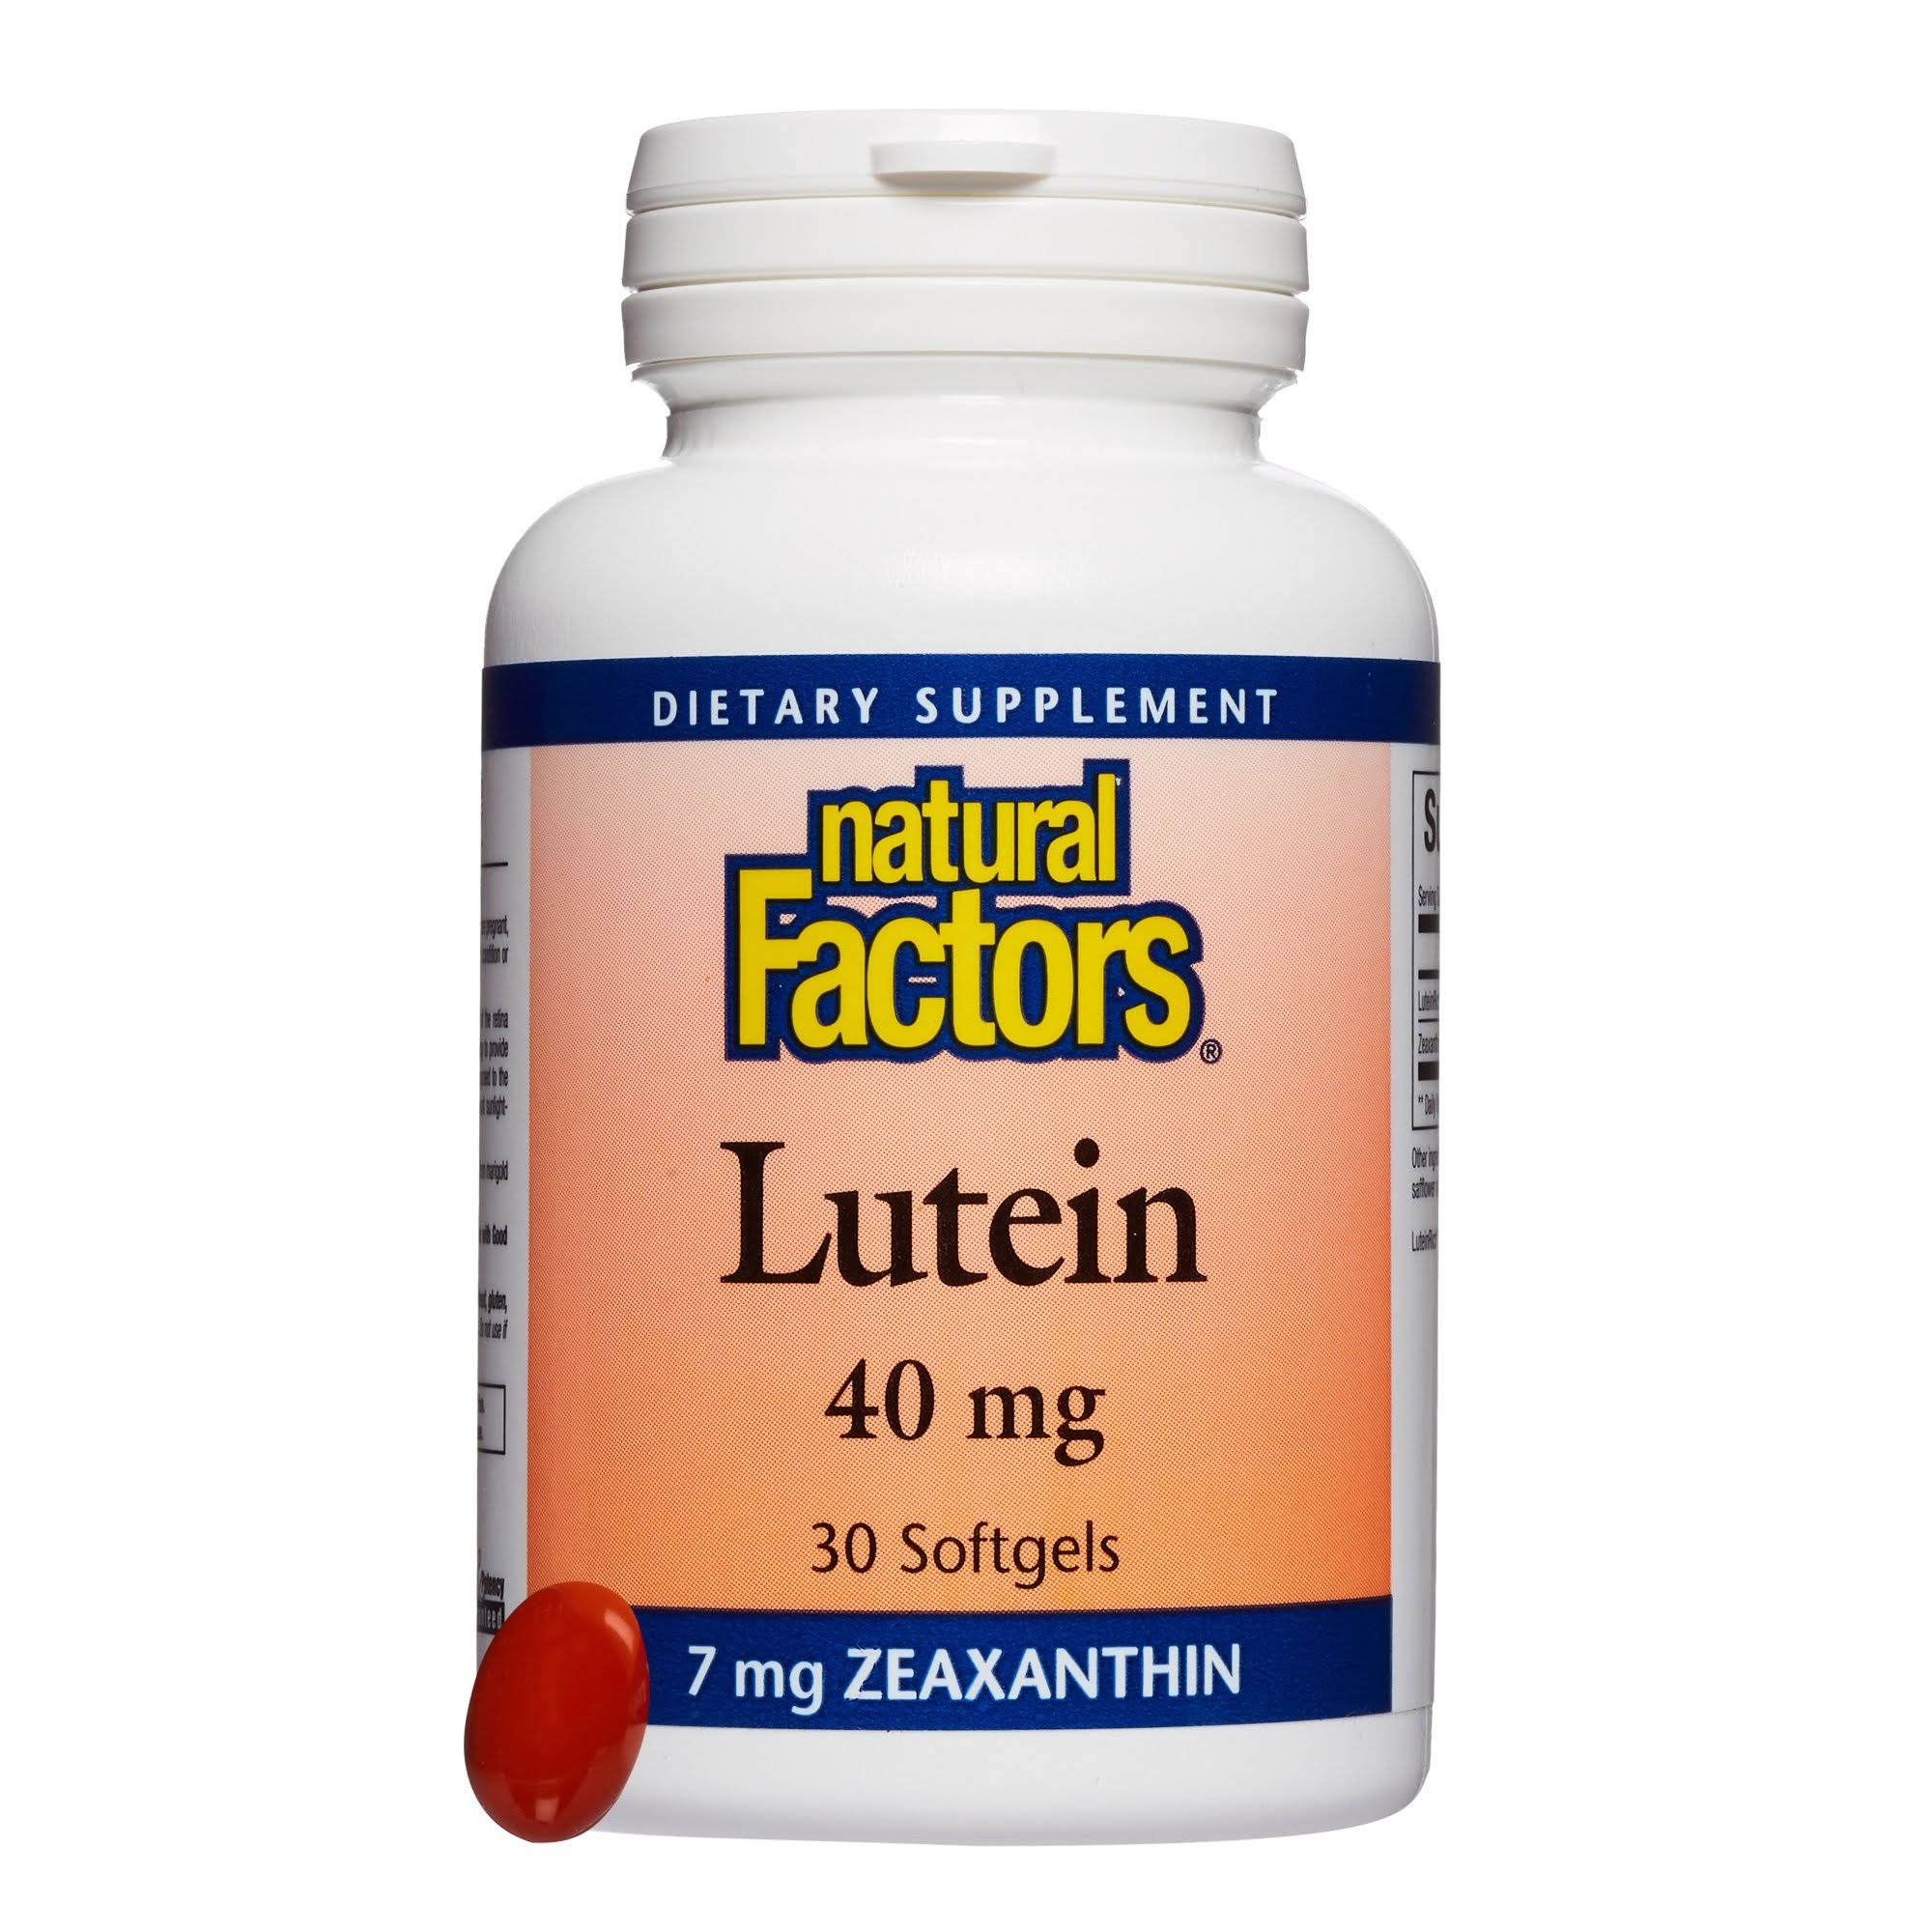 Natural Factors Lutein Softgels - 40mg, 30 Softgels